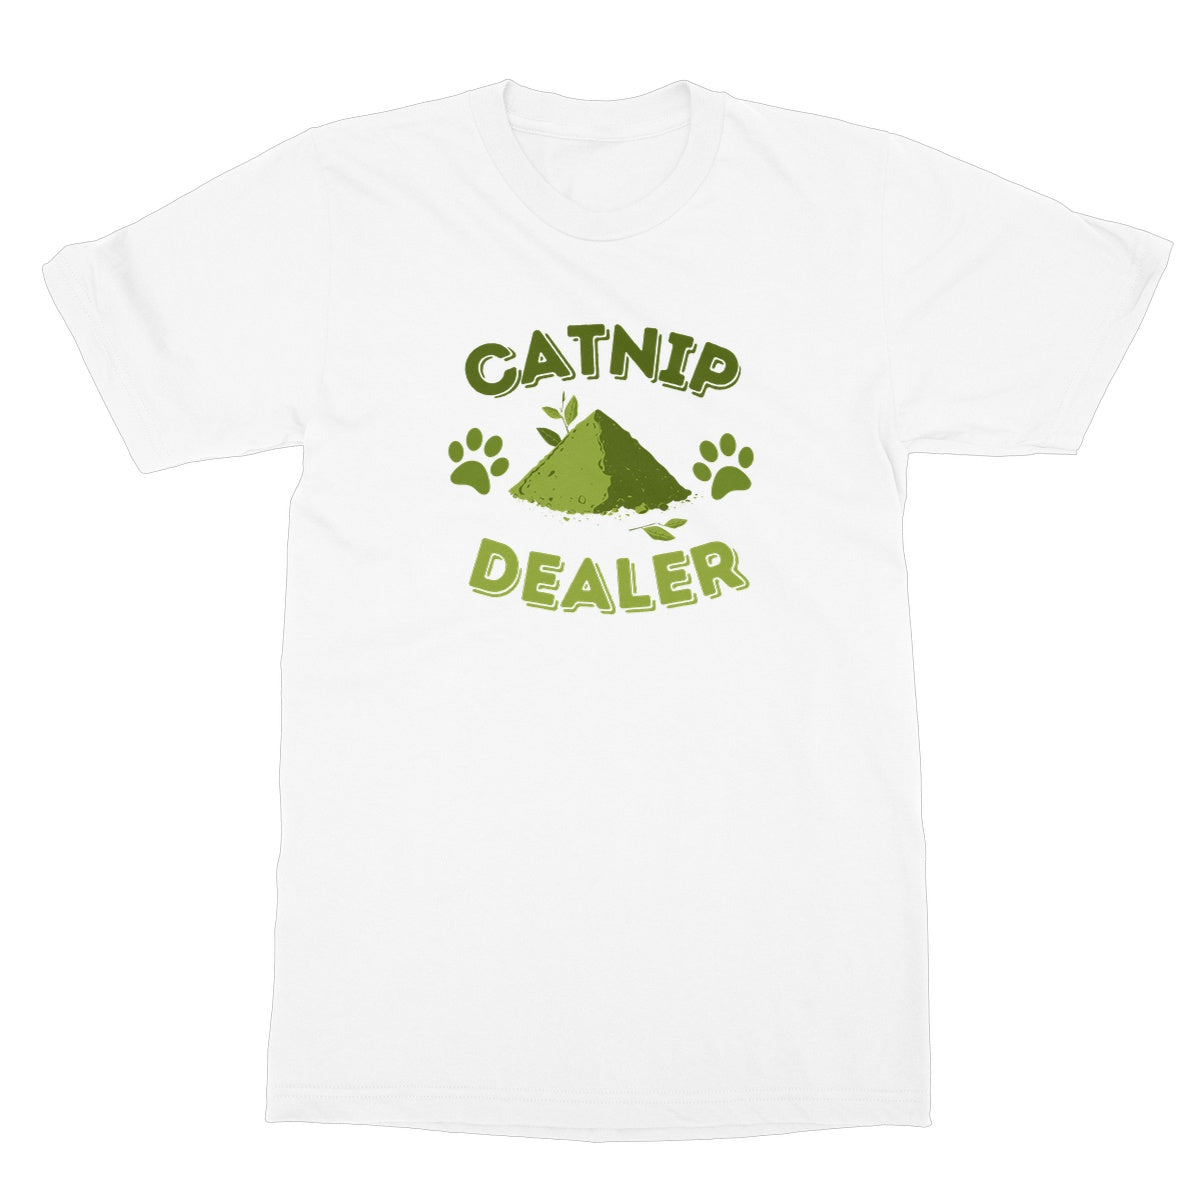 catnip dealer t shirt white